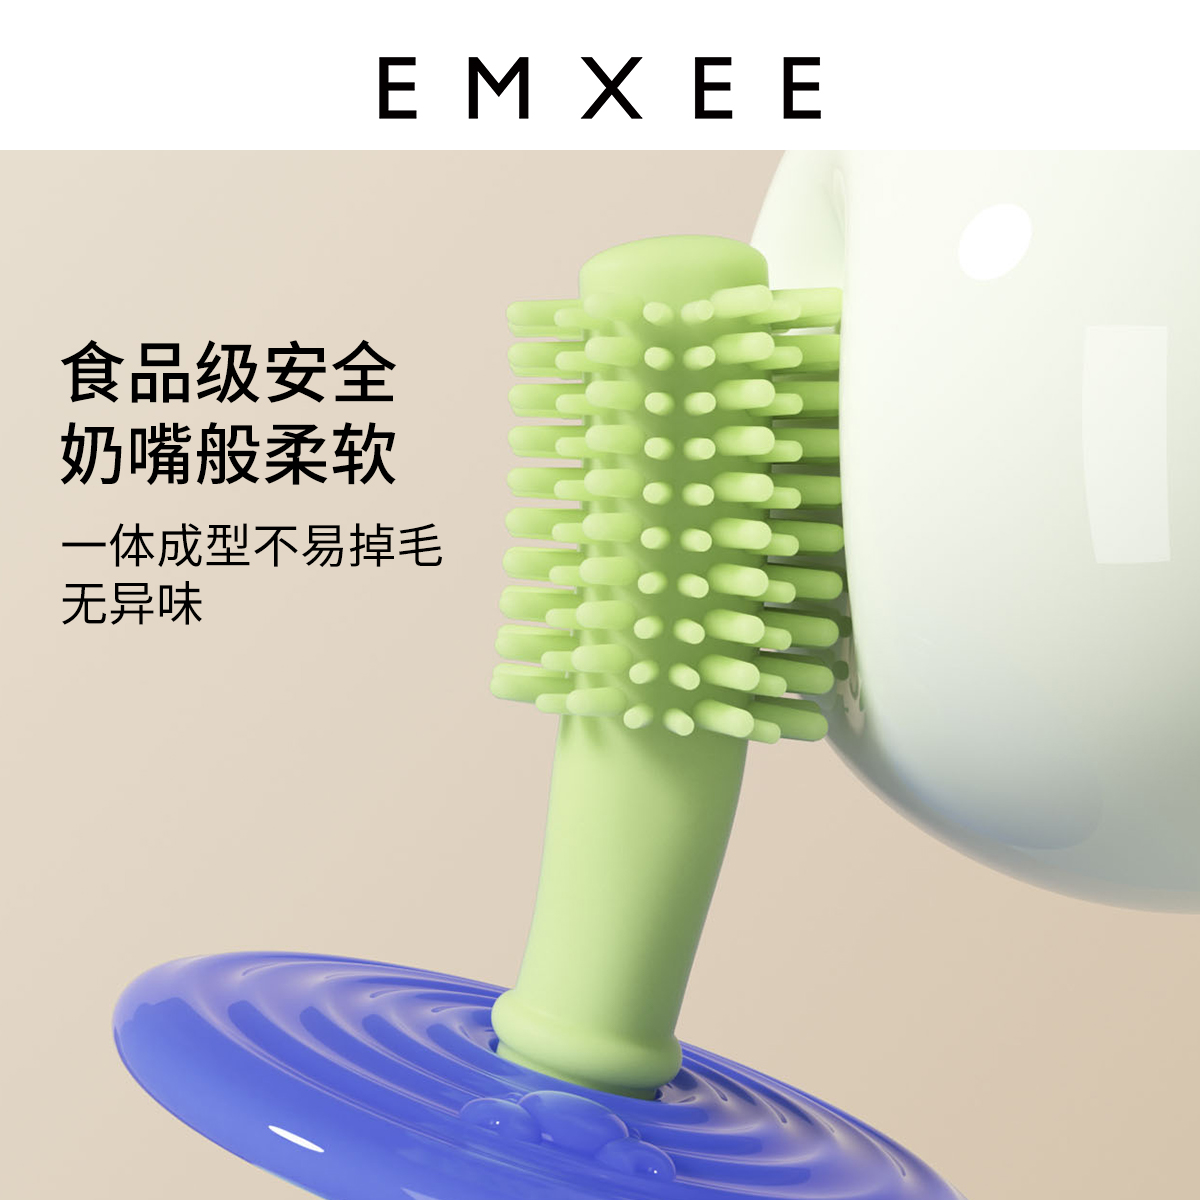 【新品】嫚熙儿童0到3岁宝宝牙刷 EMXEE嫚熙乳牙刷/训练牙刷/护齿牙刷